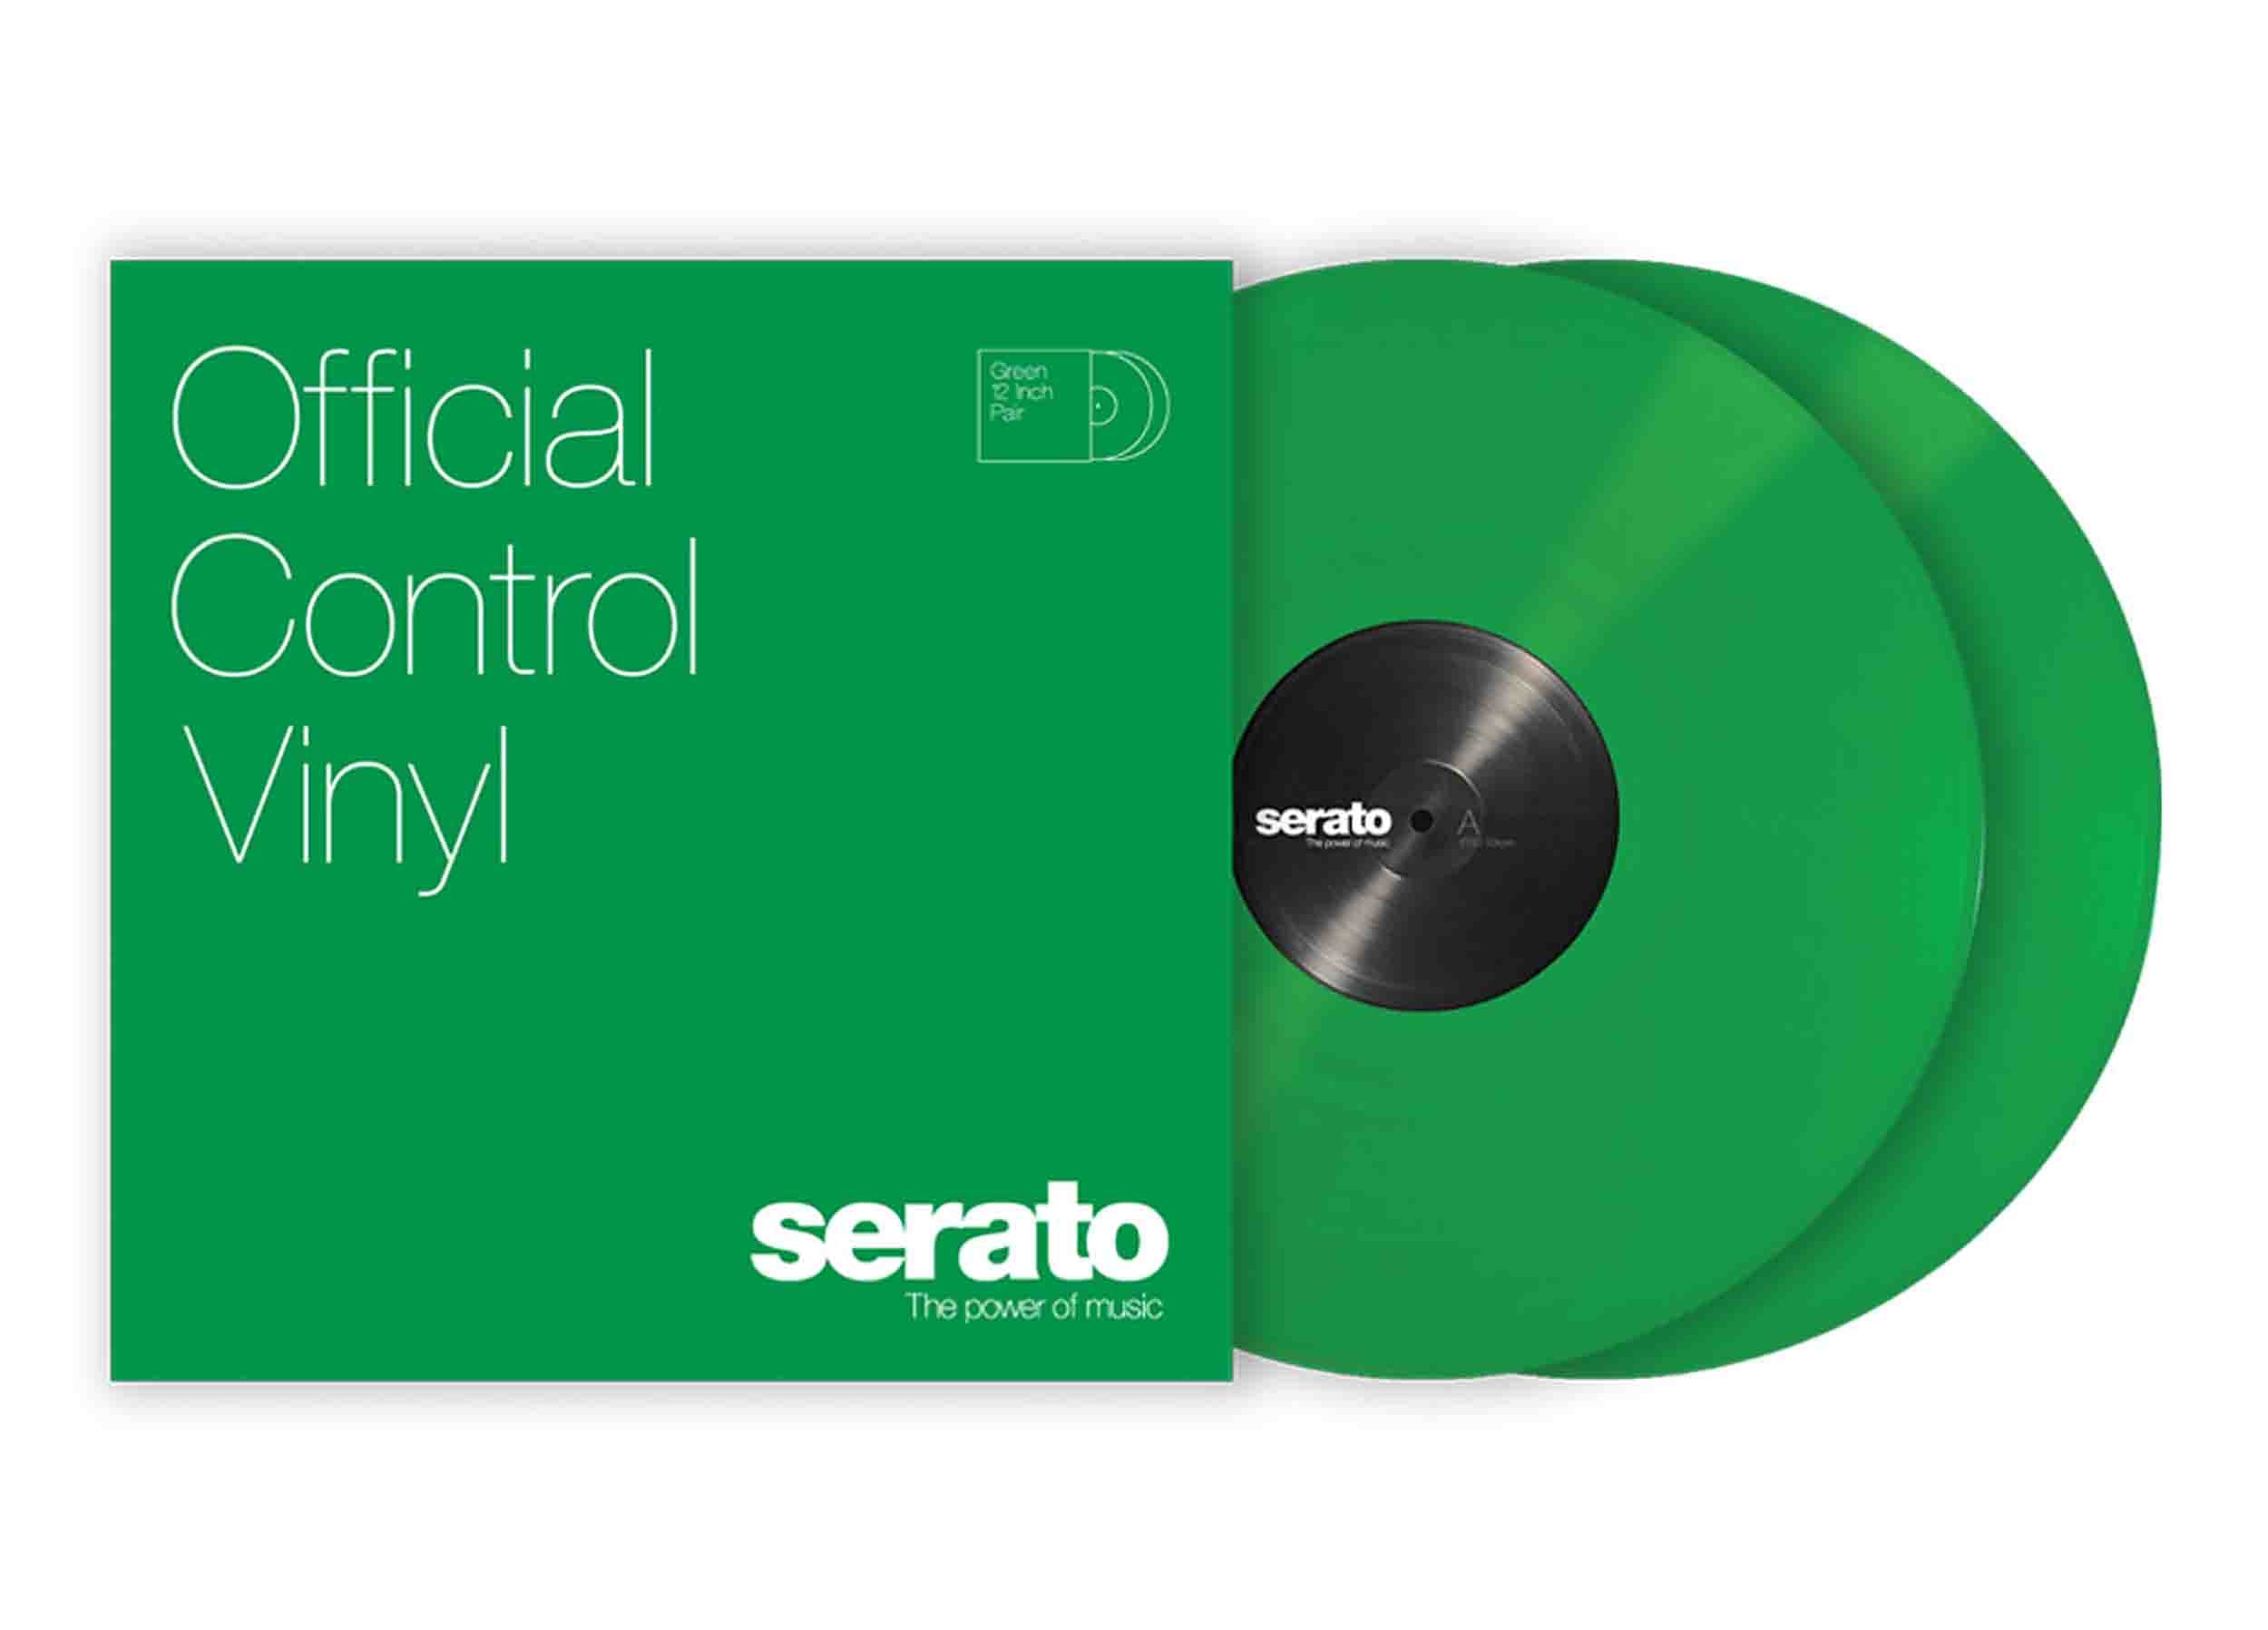 B-Stock: Serato SCV-PS-GRN-OV 12" Green Control Vinyl Pressing for Serato DJ Pro (Pair) by Serato